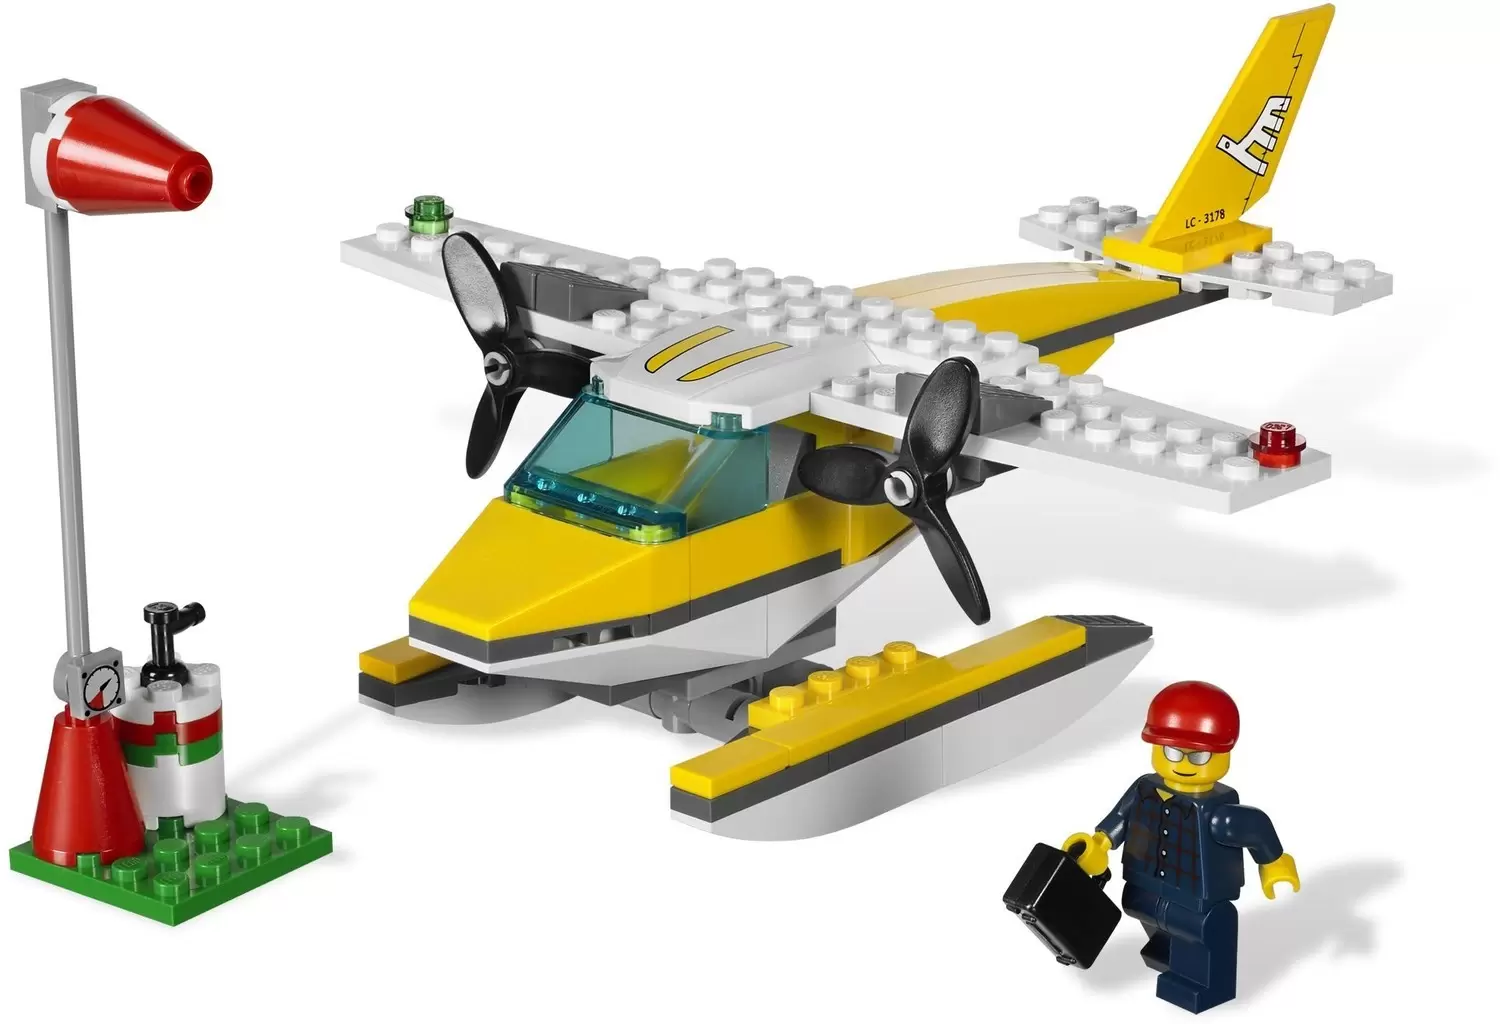 LEGO CITY - Seaplane